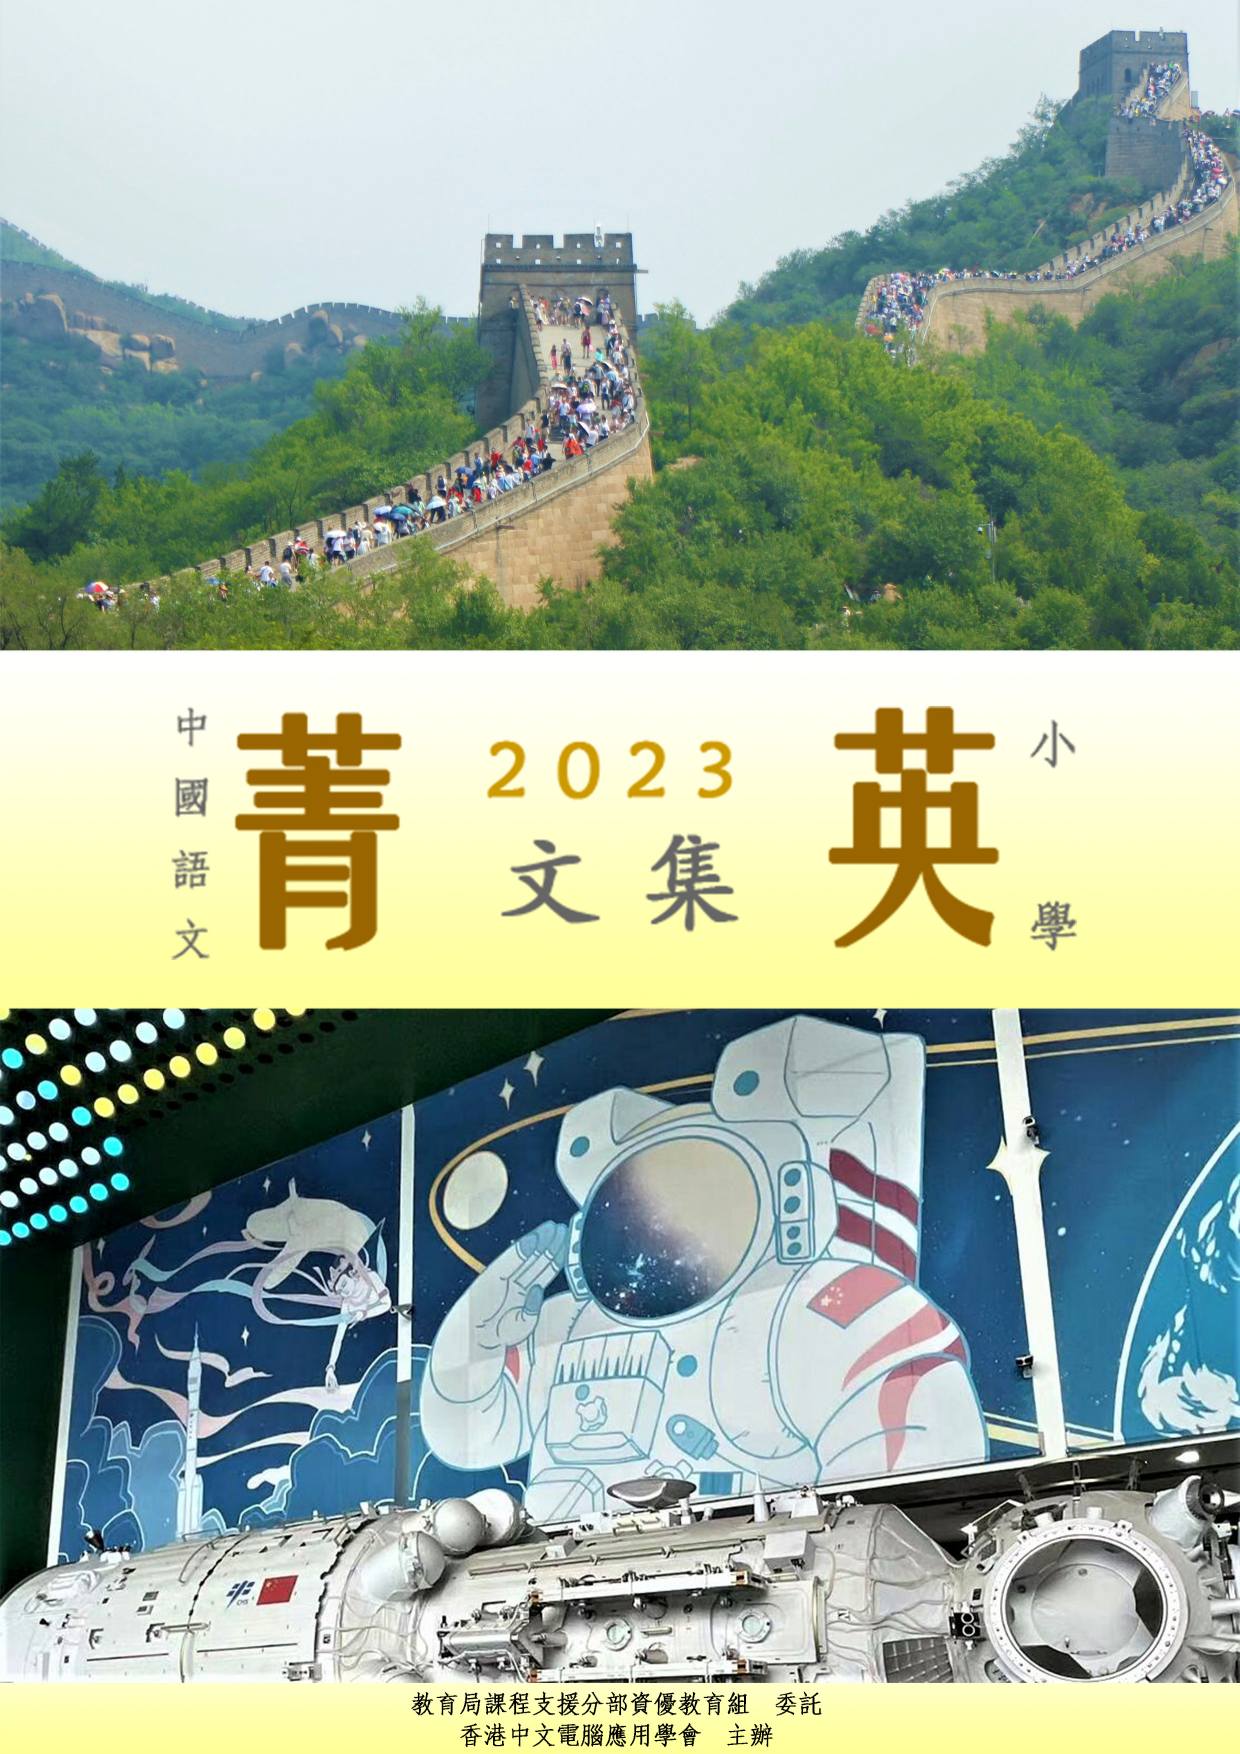 中国语文菁英计划2022/23菁英文集(小学组)